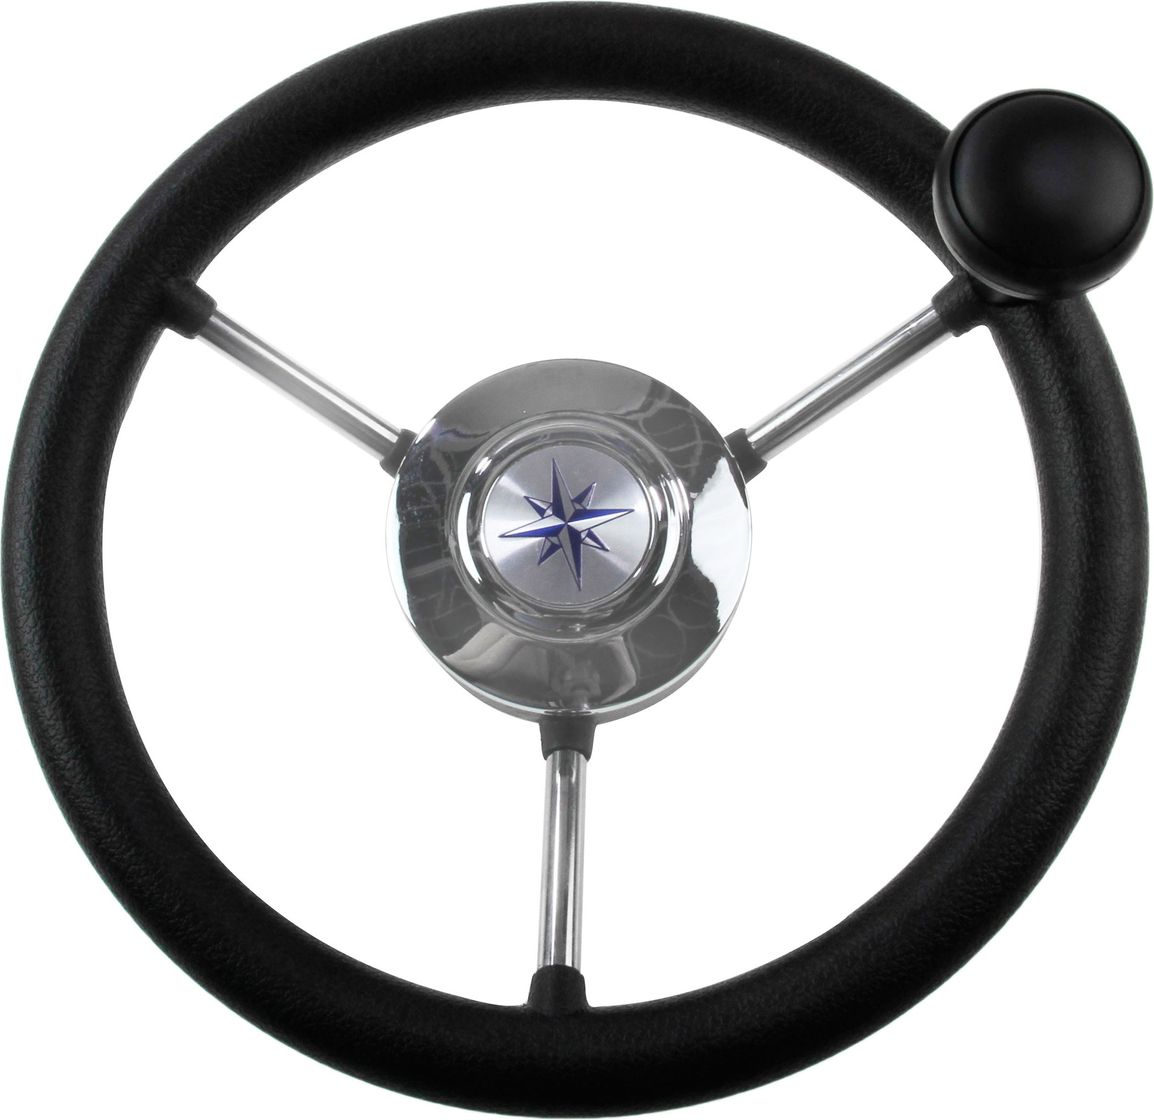 Рулевое колесо LIPARI обод черный, спицы серебряные д. 280 мм со спинером VN828050-01